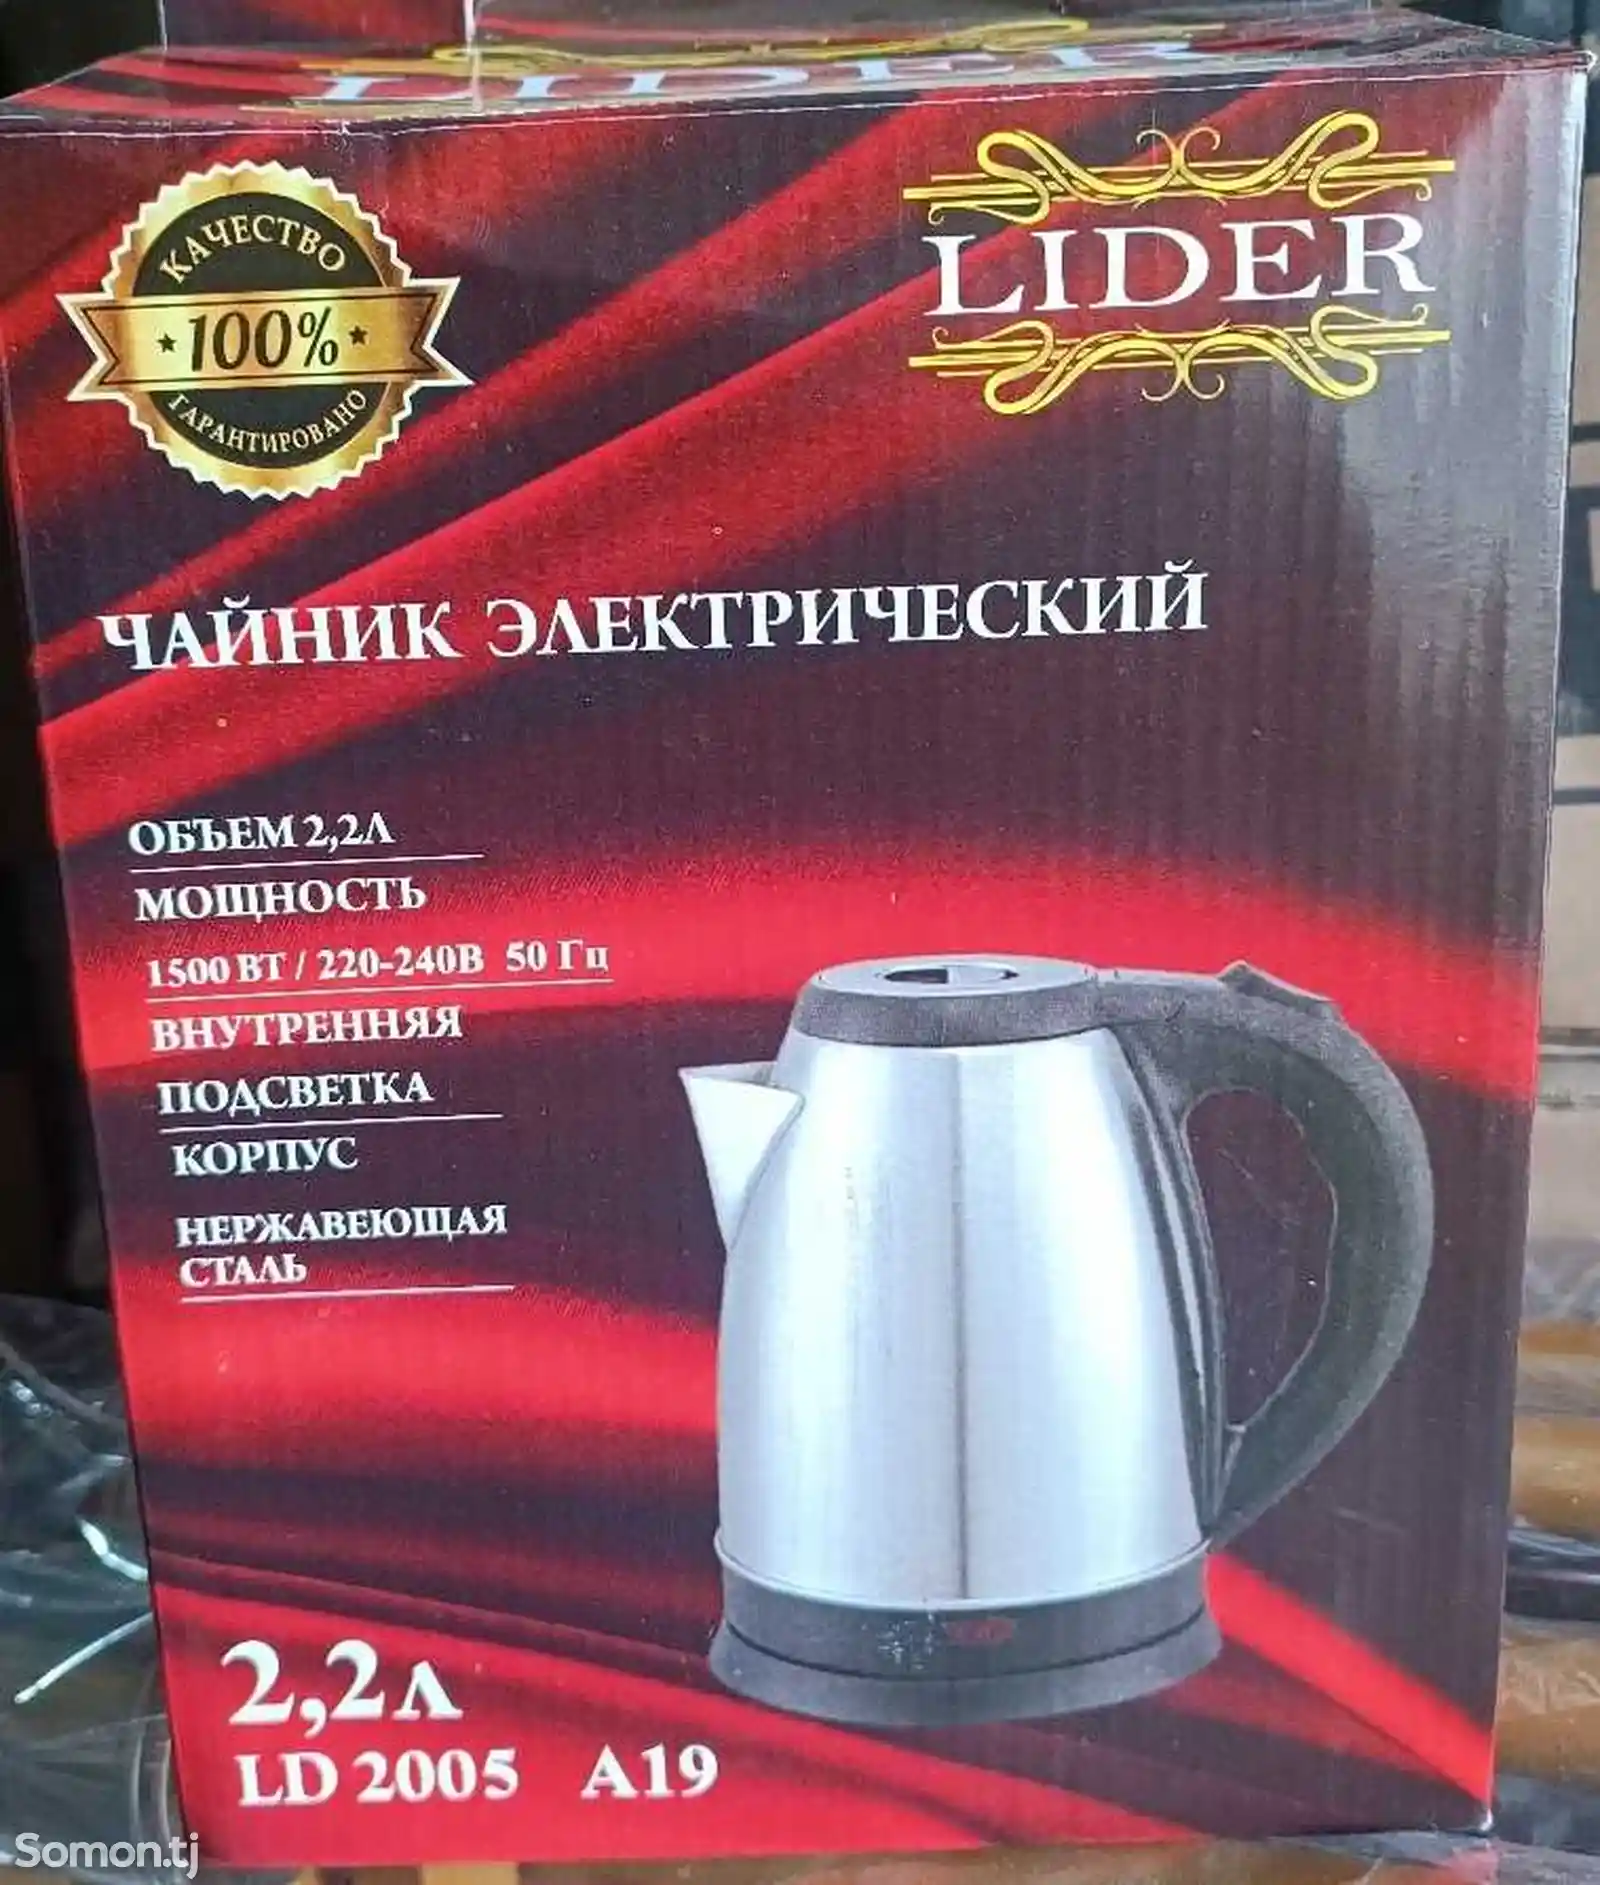 Чайник электрический Lider-1